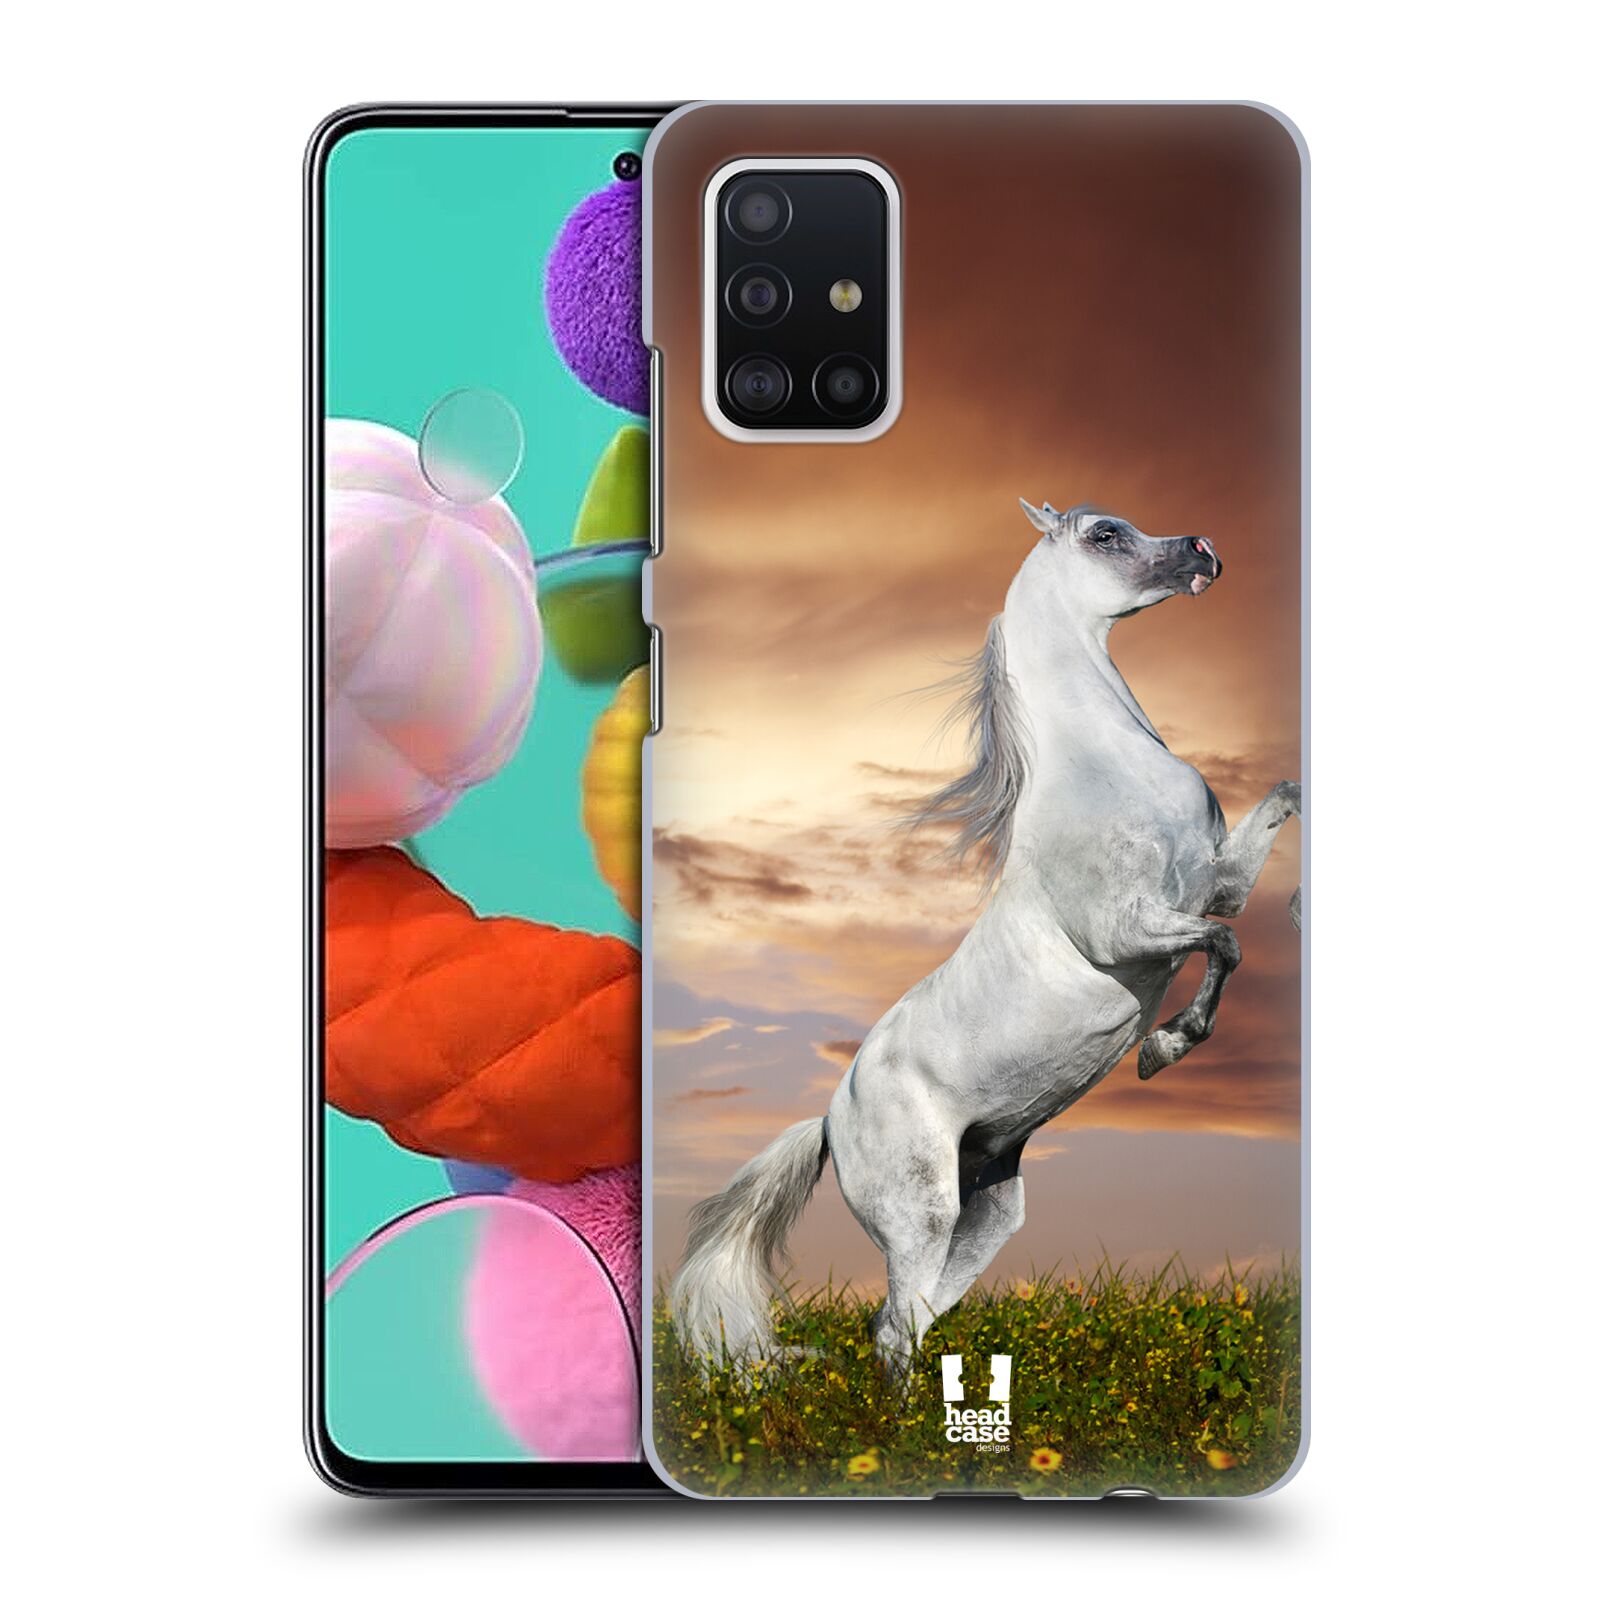 Zadní obal pro mobil Samsung Galaxy A51 - HEAD CASE - Svět zvířat divoký kůň